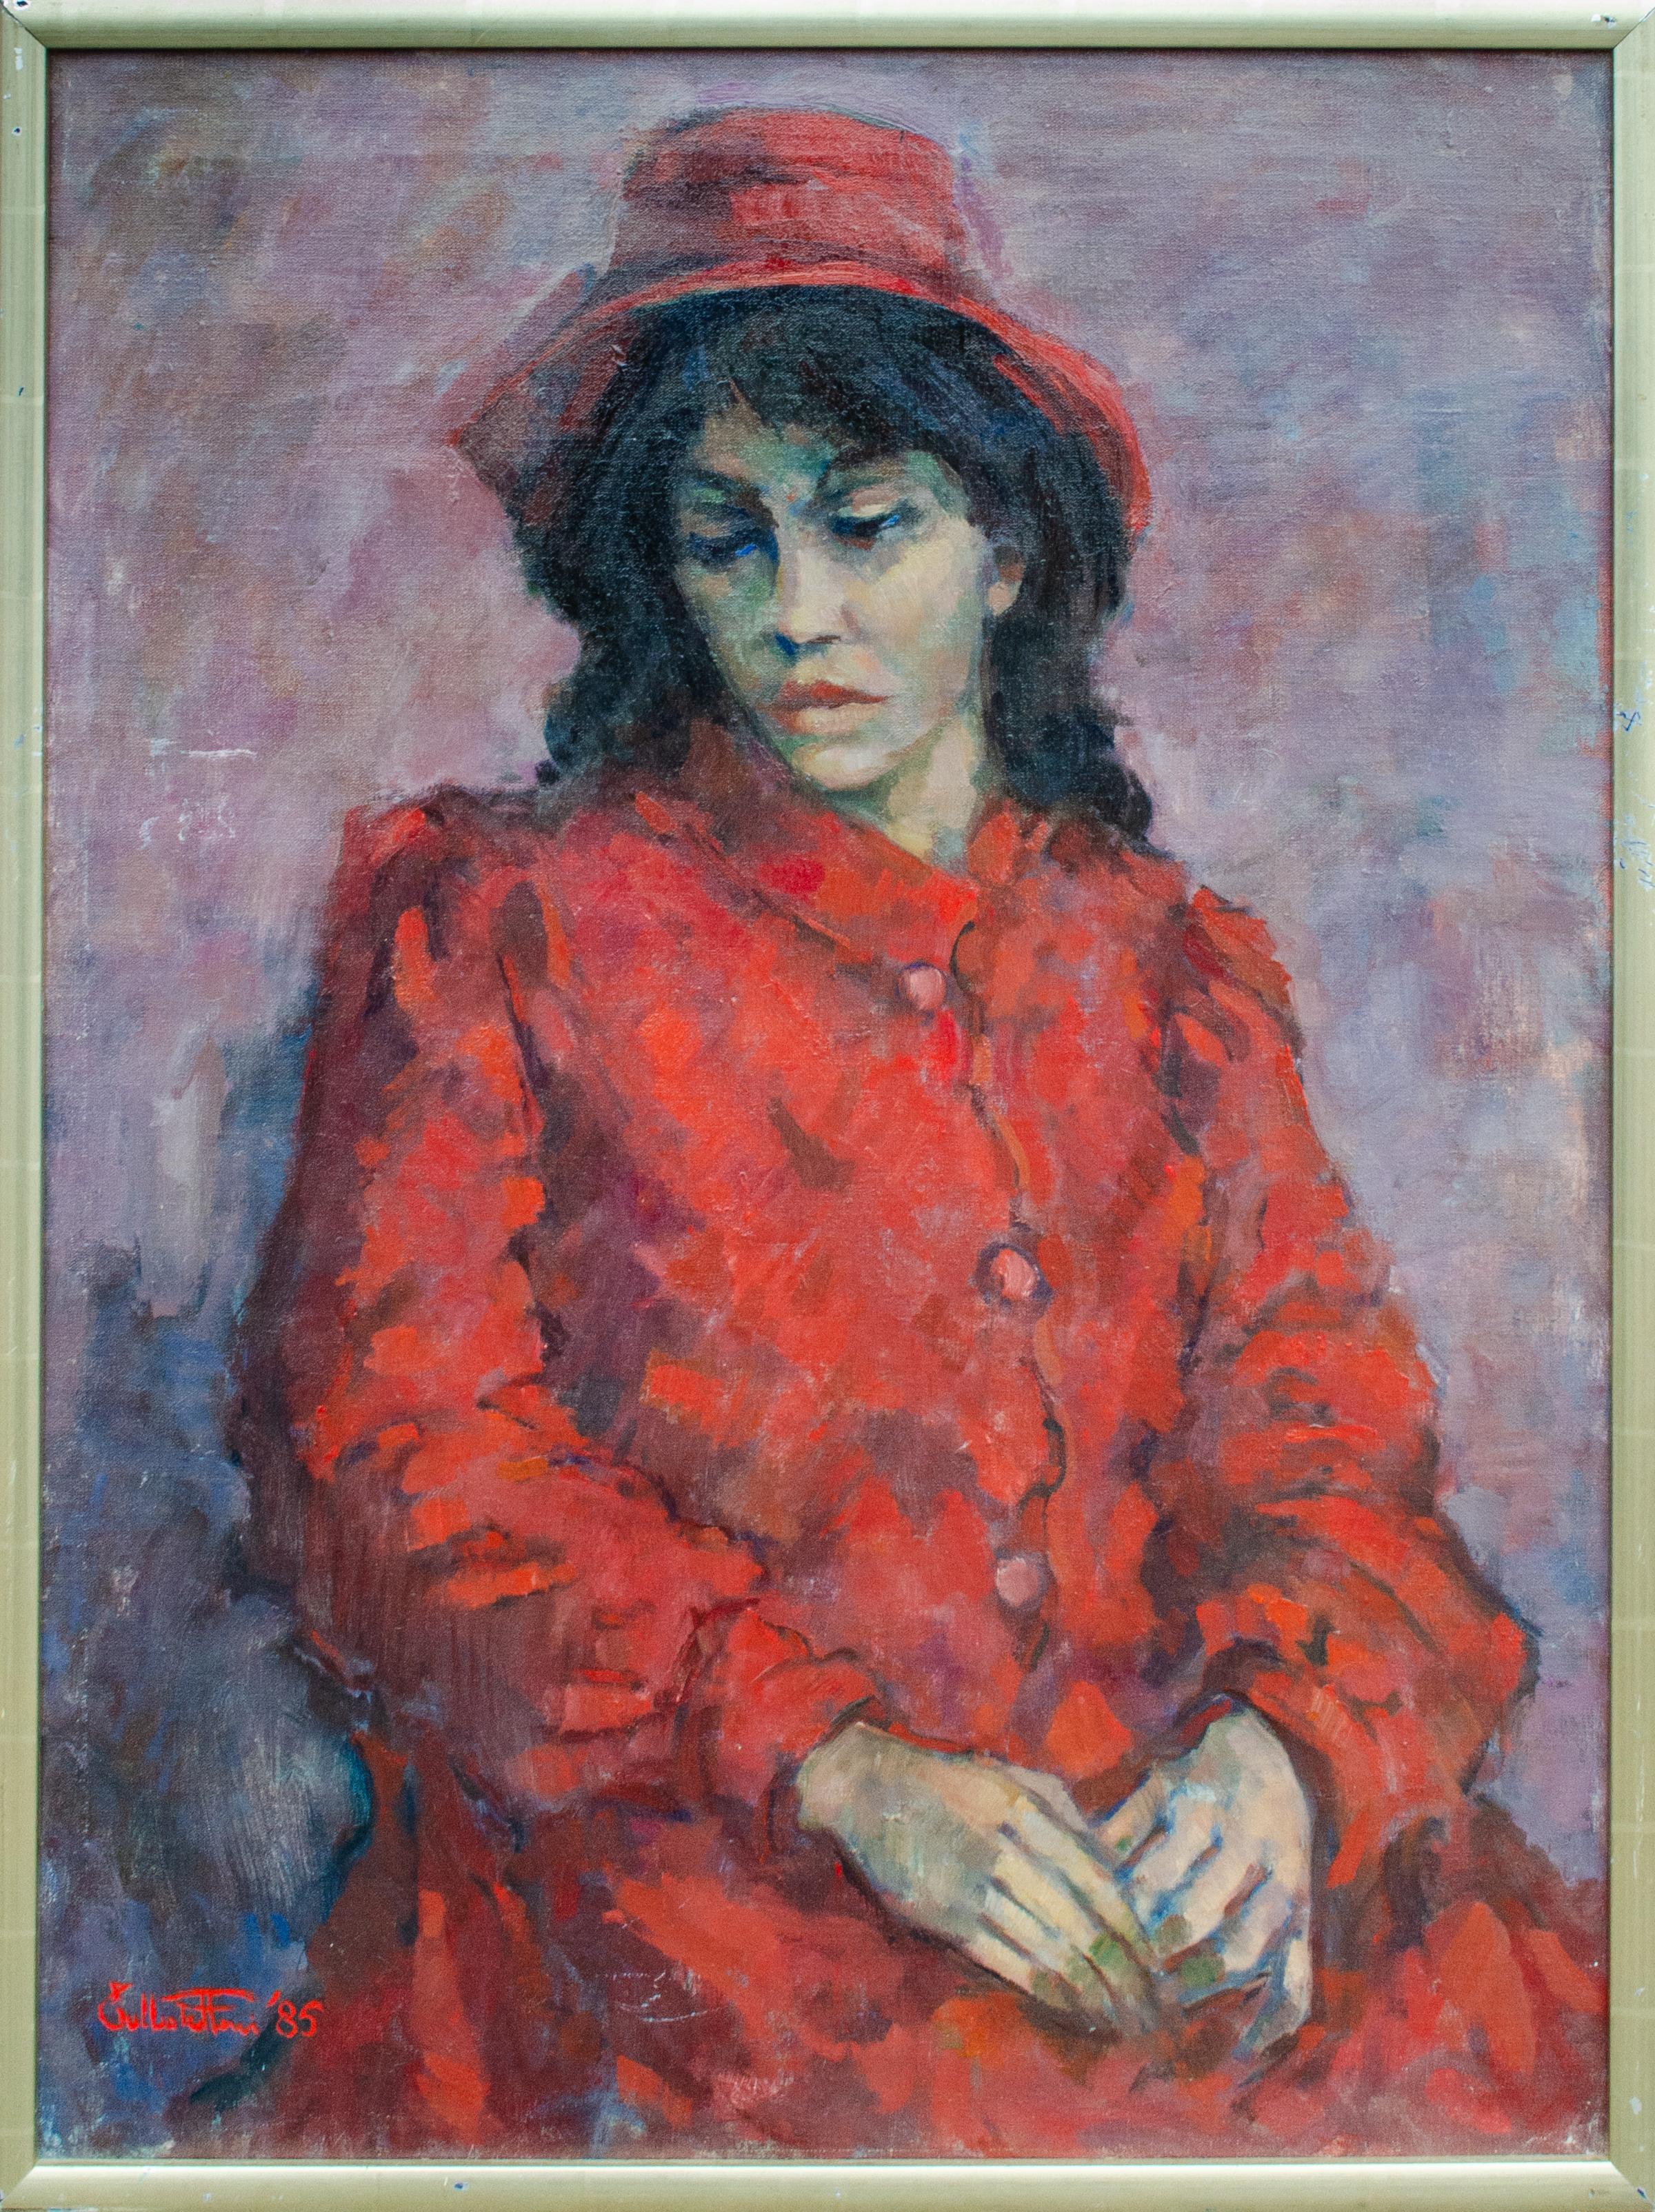 Unknown Portrait Painting – Mystery Modernistisches italienisches Künstlerporträt einer Frau mit Hut